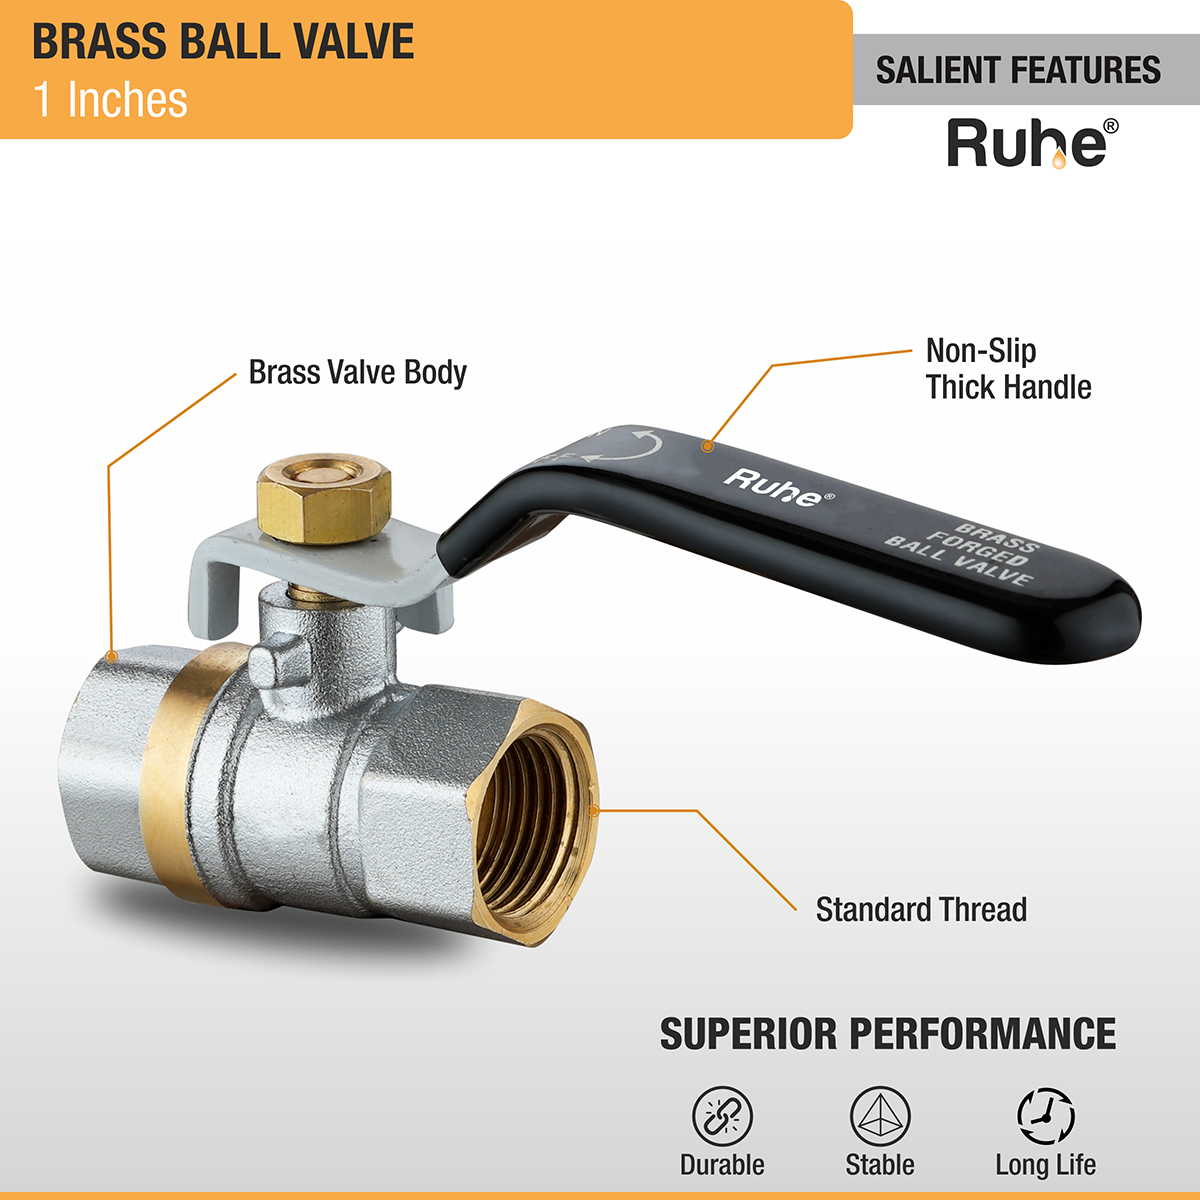 Brass Ball Valve (¾ Inch) features